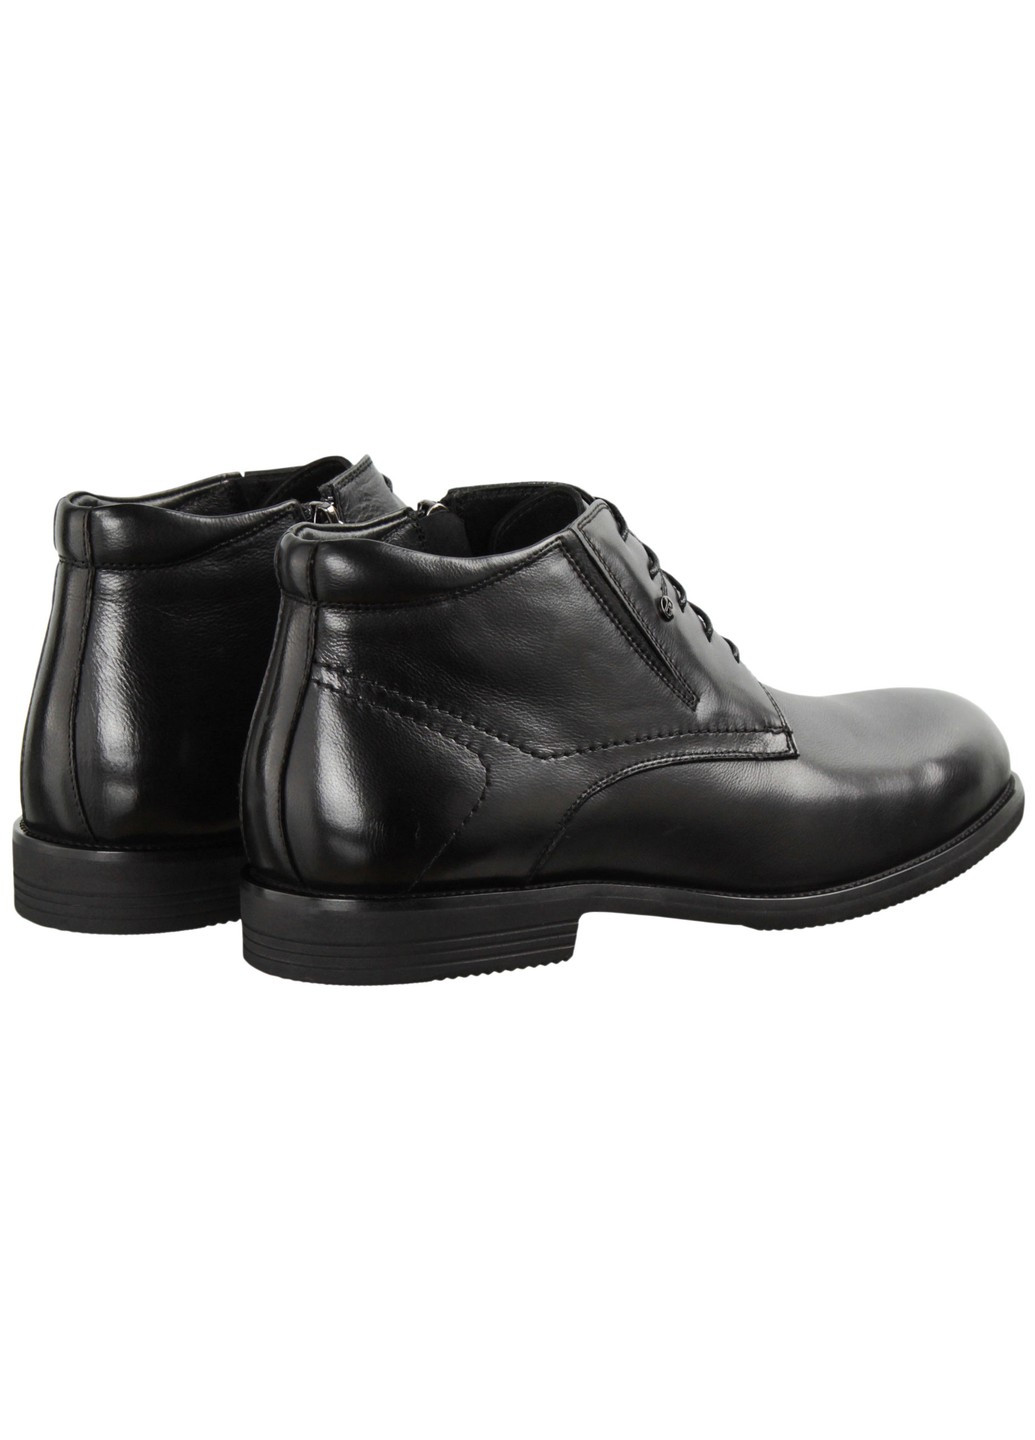 Черные зимние мужские ботинки классические 199821 Buts